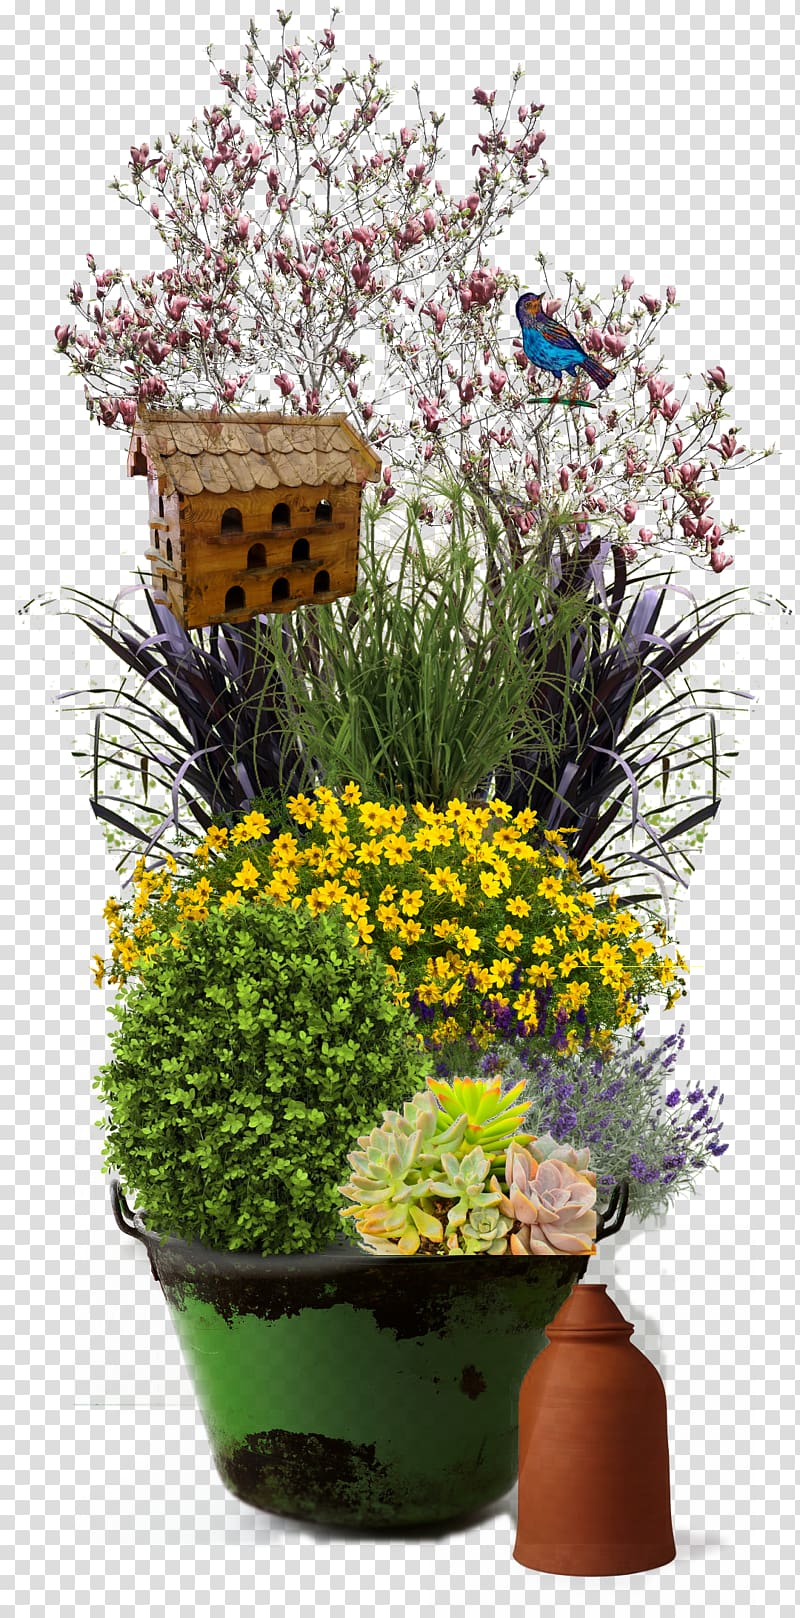 Floral design Cut flowers Flowerpot Flower bouquet, Container Garden transparent background PNG clipart